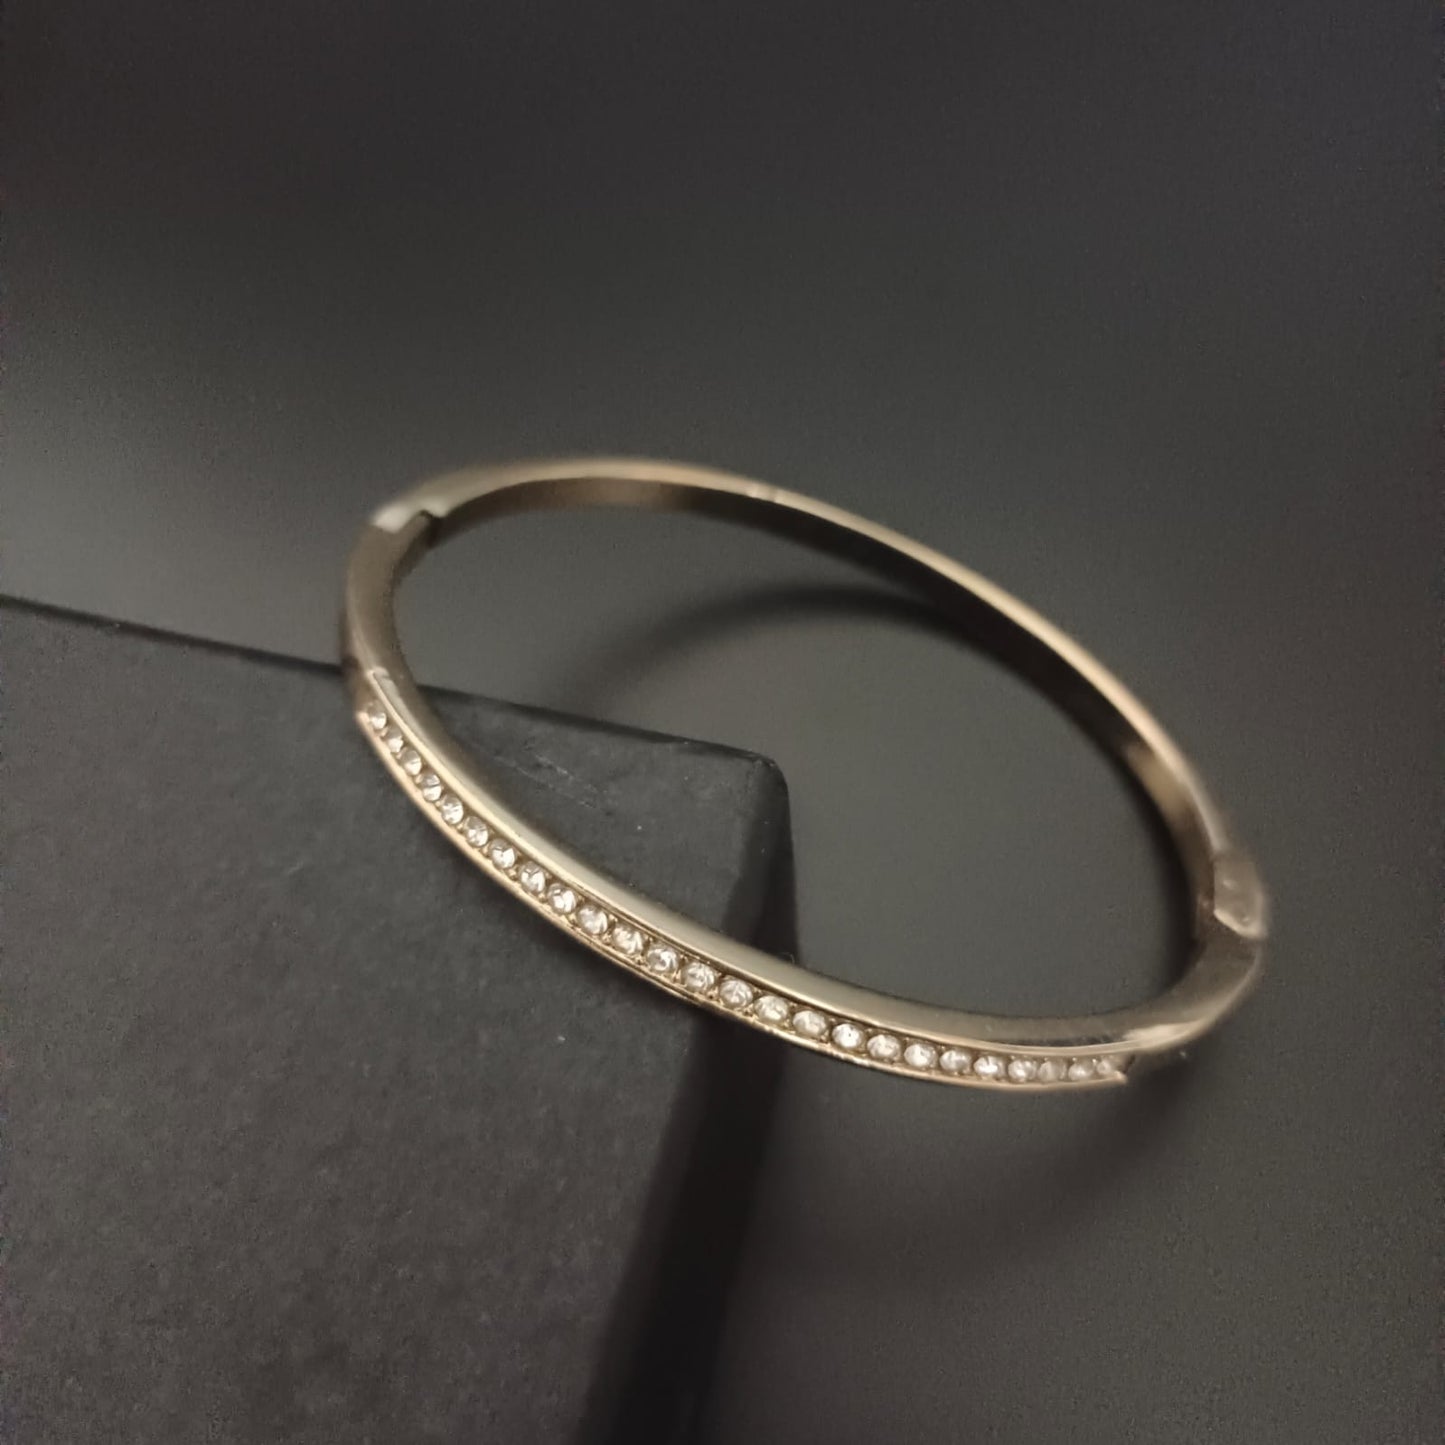 New Diamond Gold Bangle Design Kada Bracelet For Women